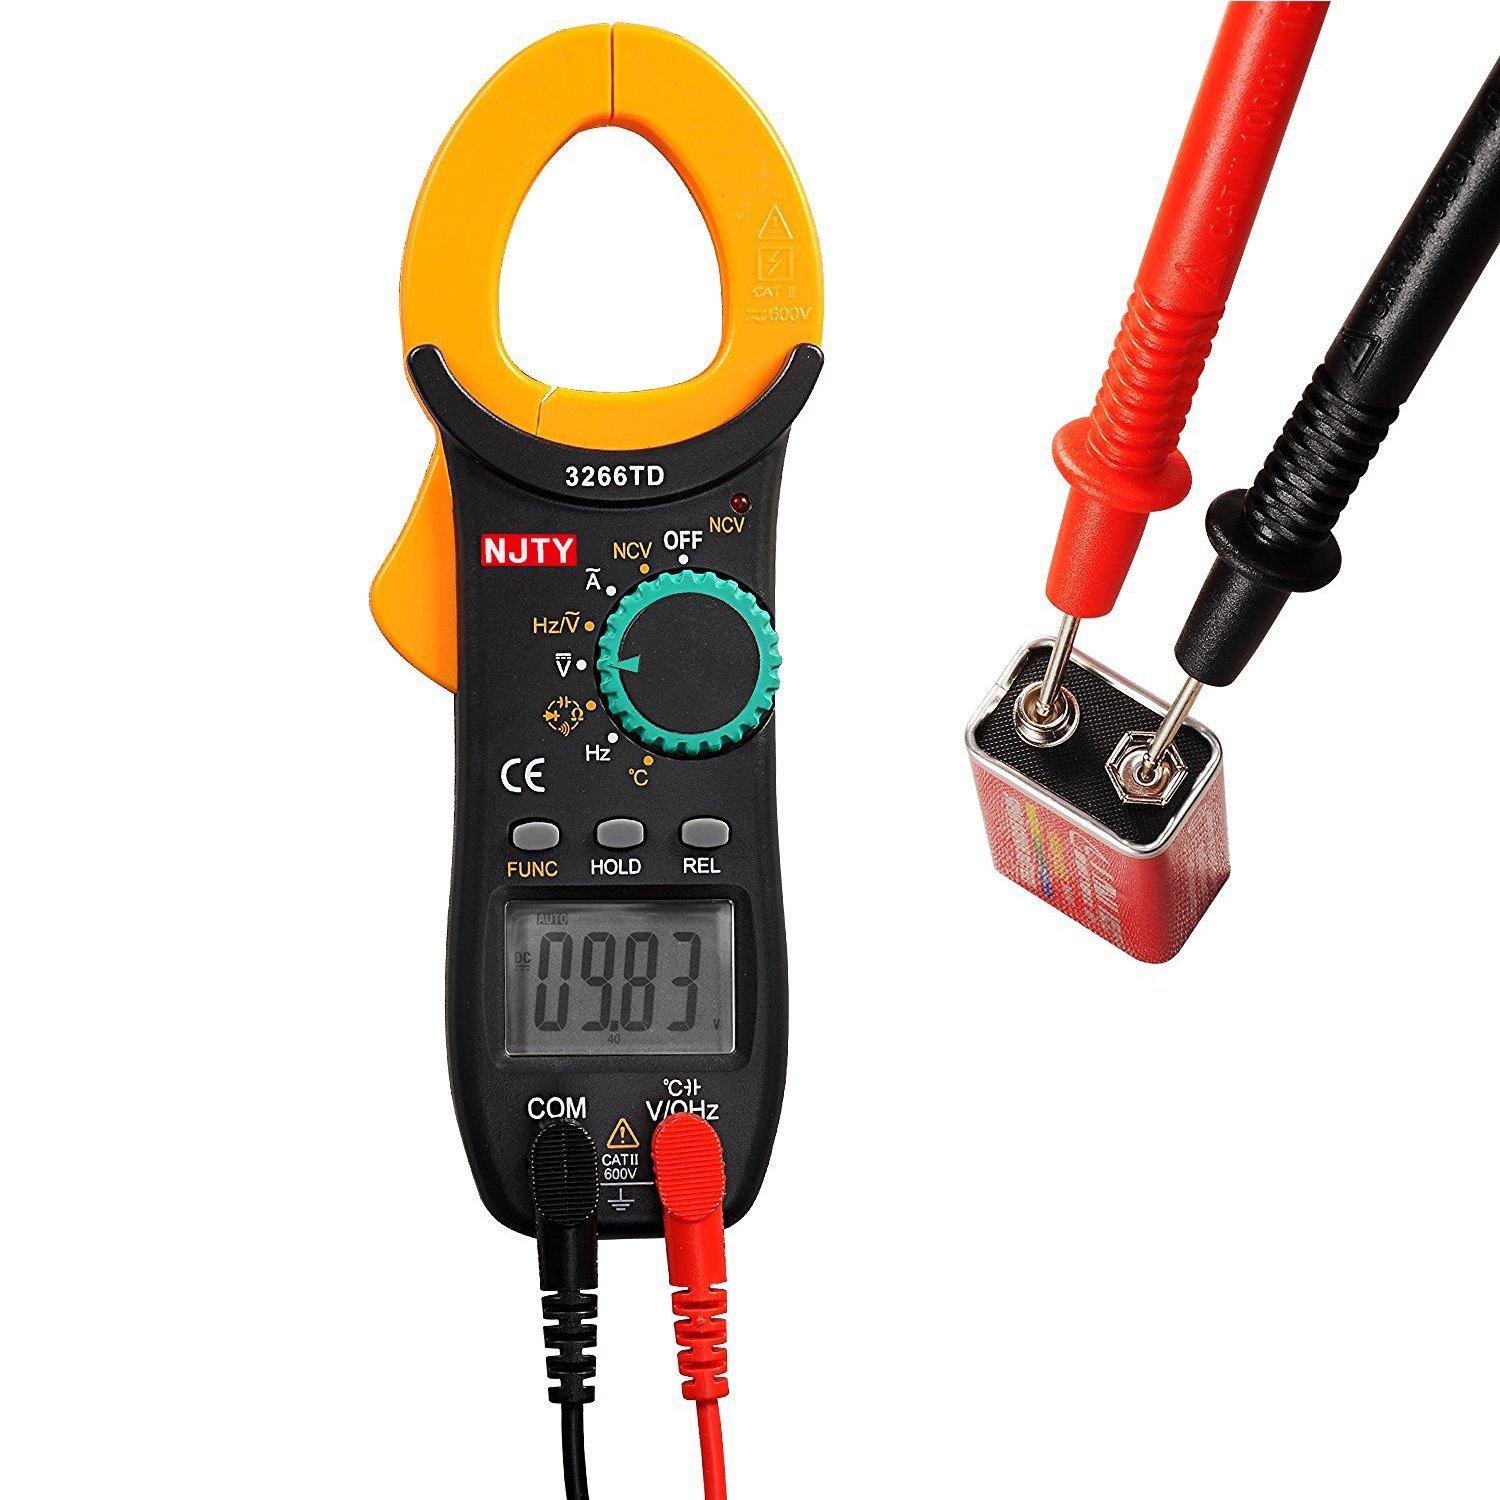 Ampe kìm kẹp mét NJTY 3266TD bỏ túi, công cụ sửa chữa điện , điện lạnh đo được nhiệt độ.